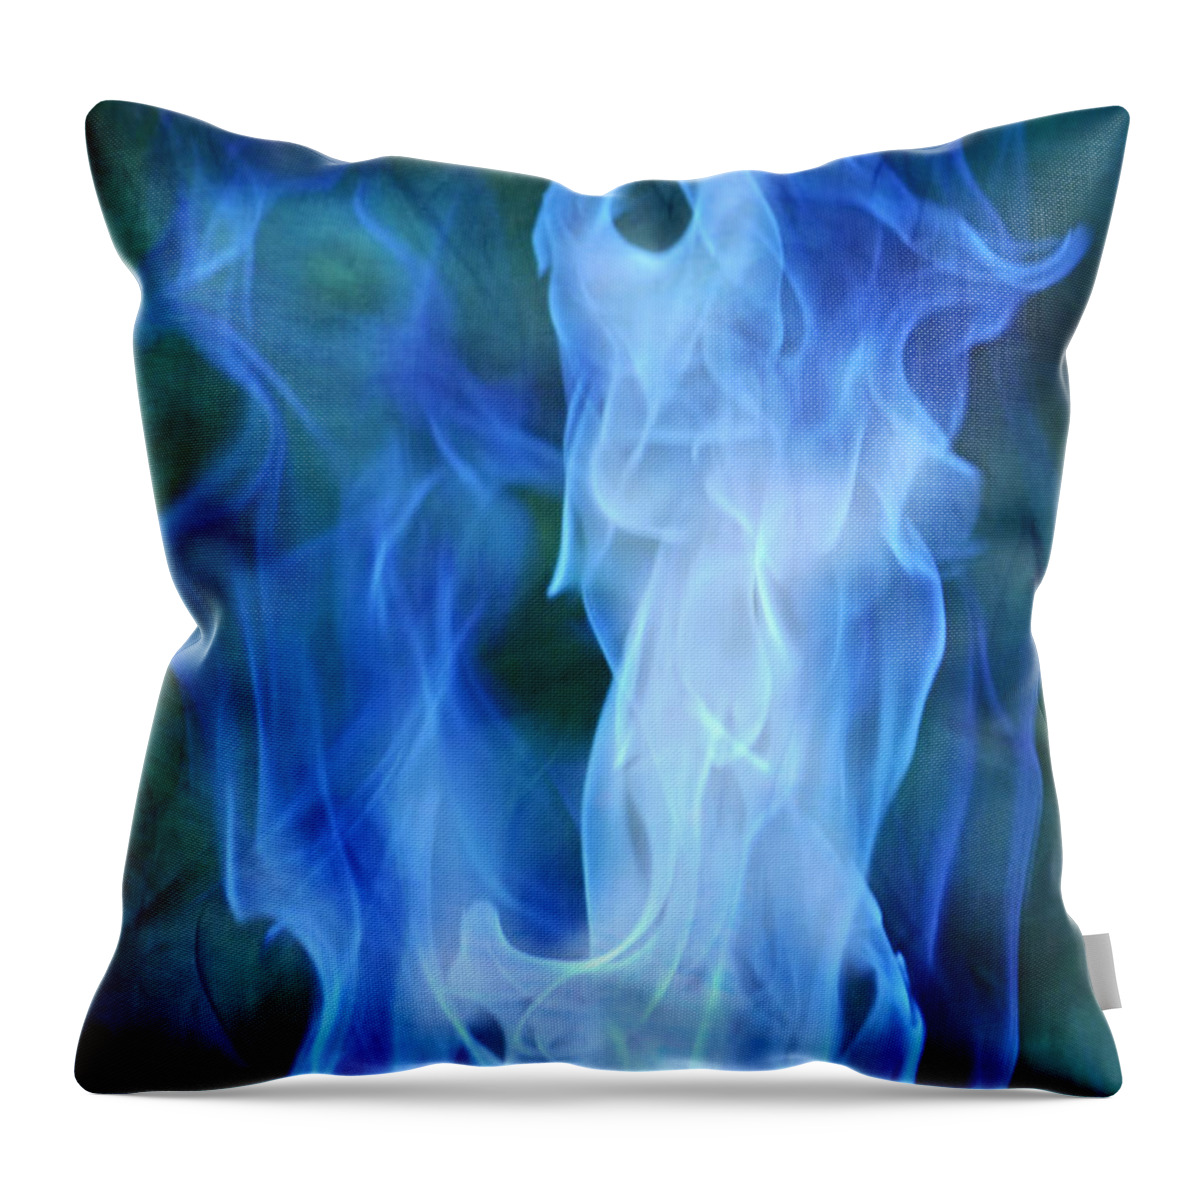 Fire Pillows - X-Series